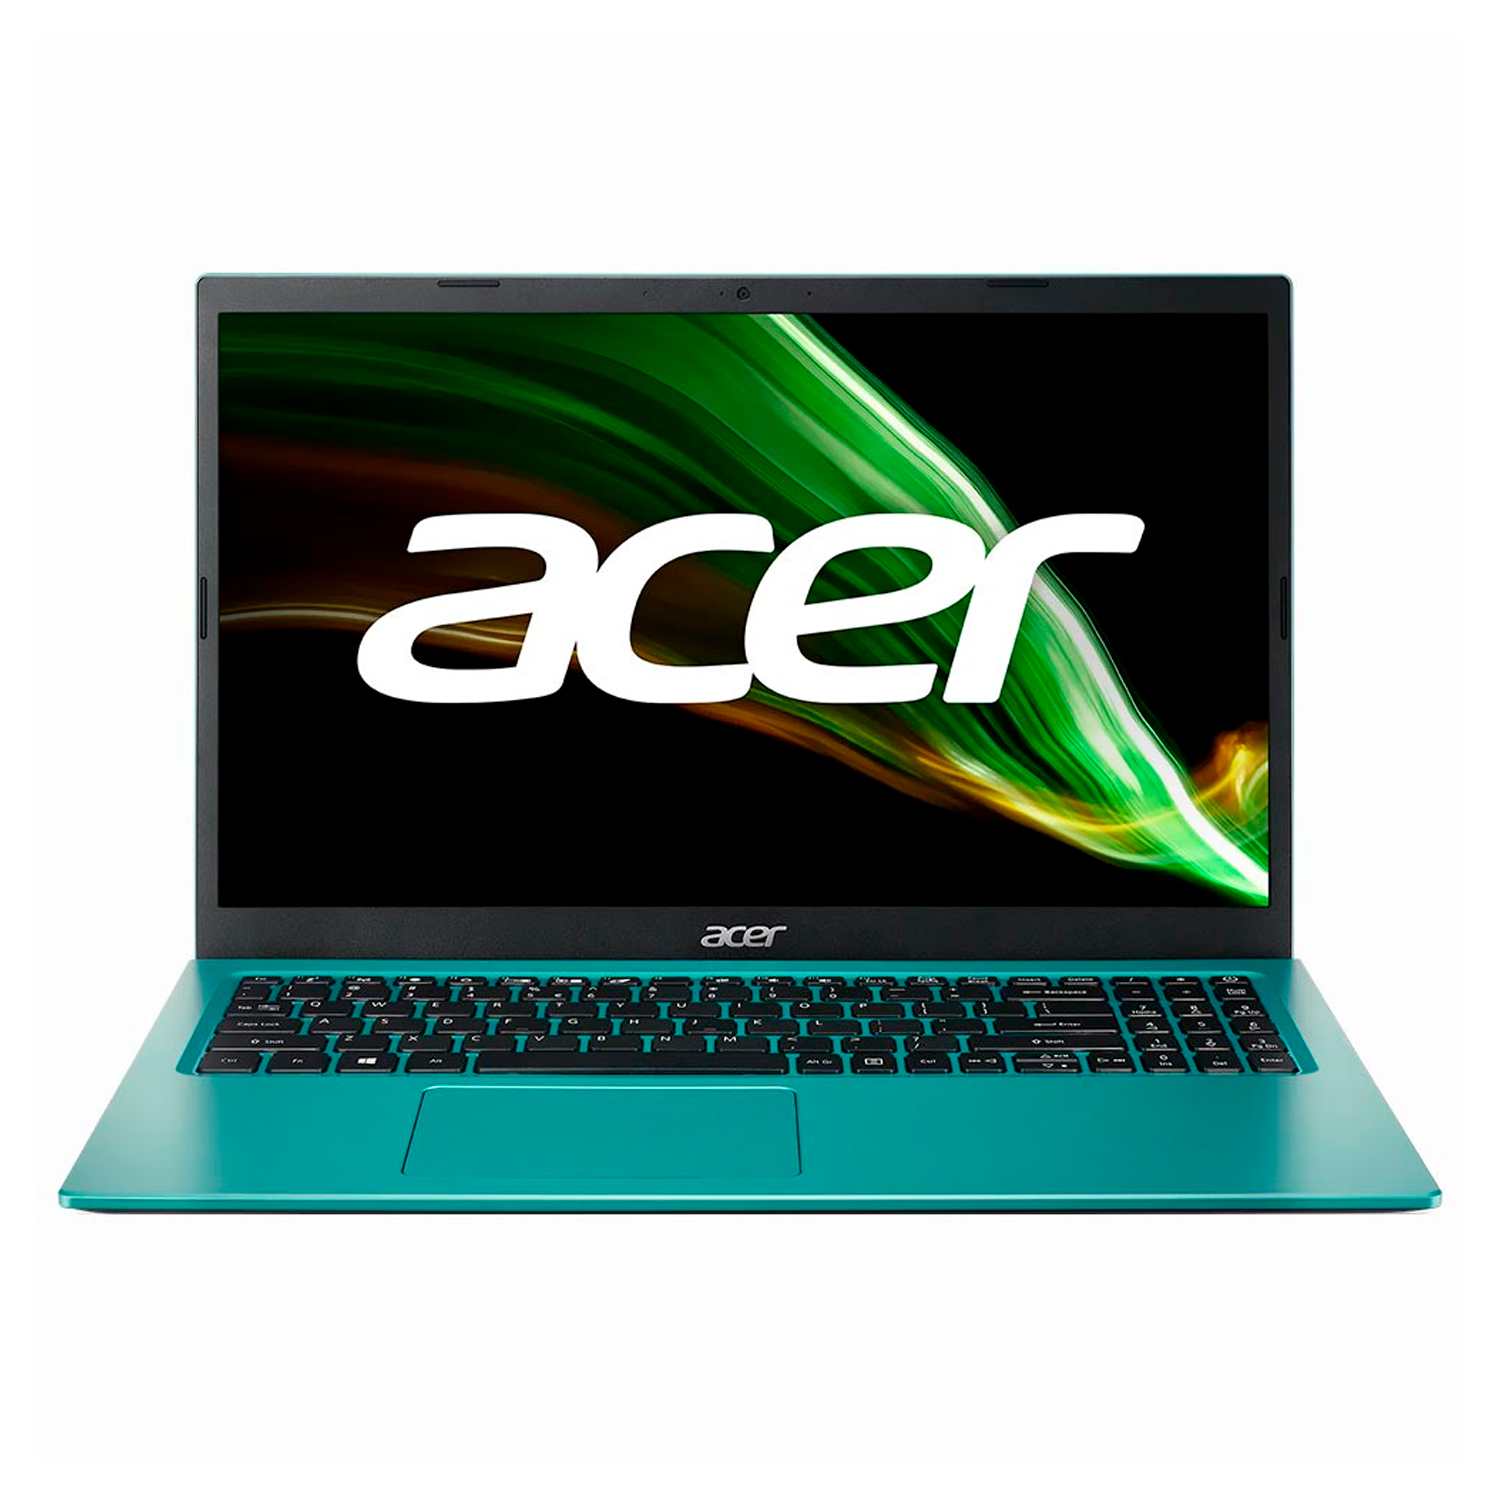 Notebook Acer Aspire 3 A315-58-34DA 15.6" Intel Core i3 1115G4 128GB SSD 4GB RAM - Blue Teal